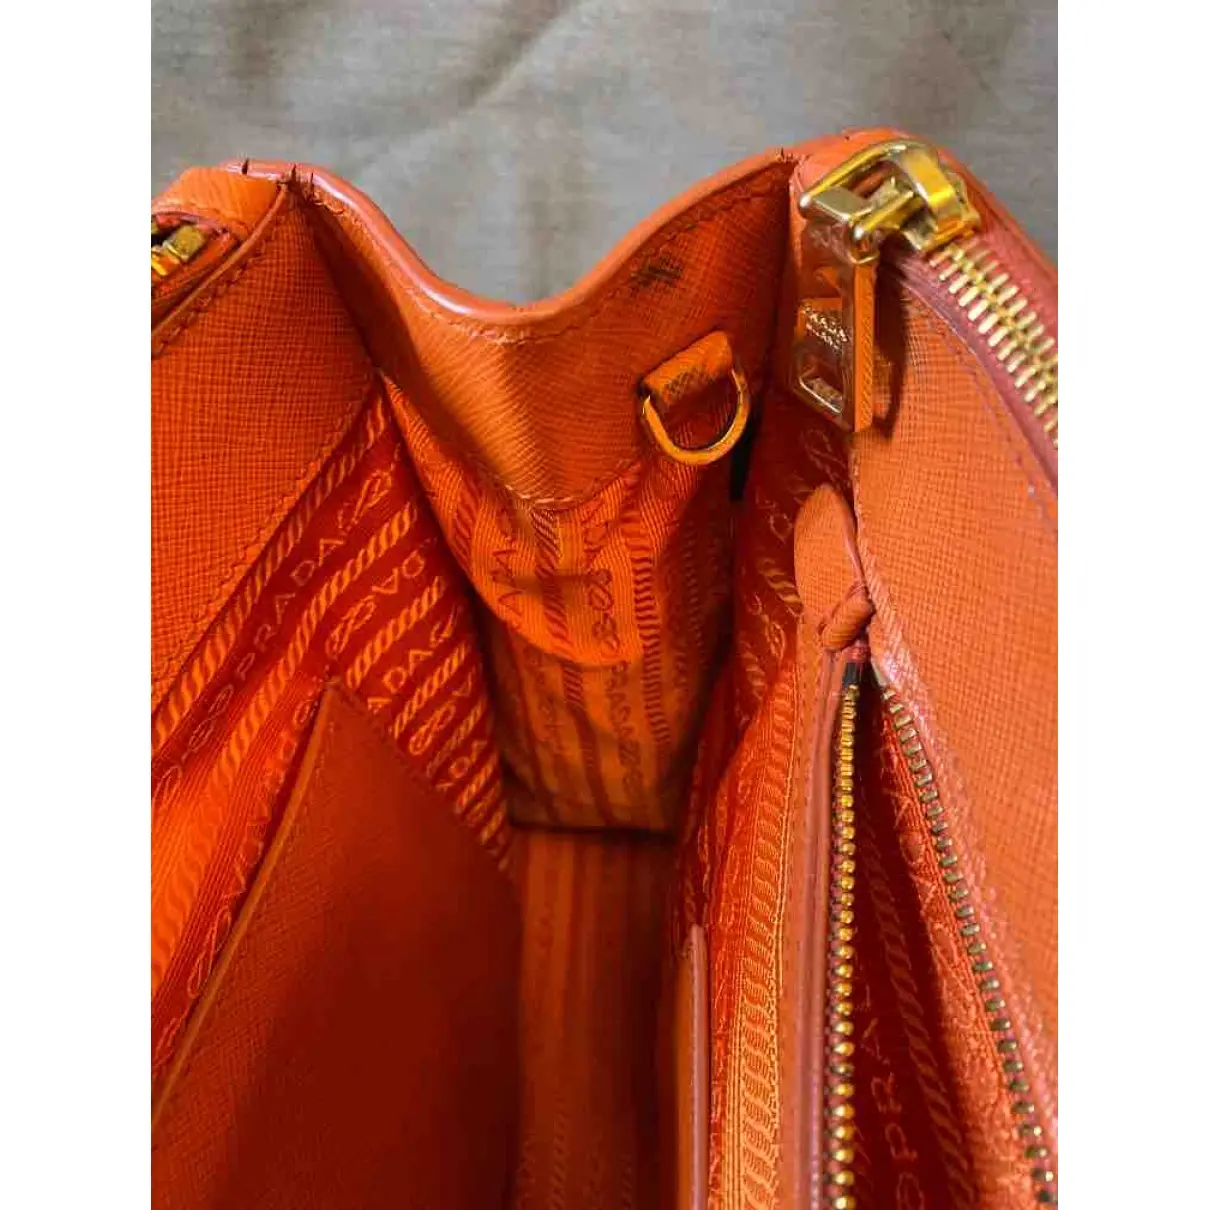 Prada Saffiano  leather handbag for sale